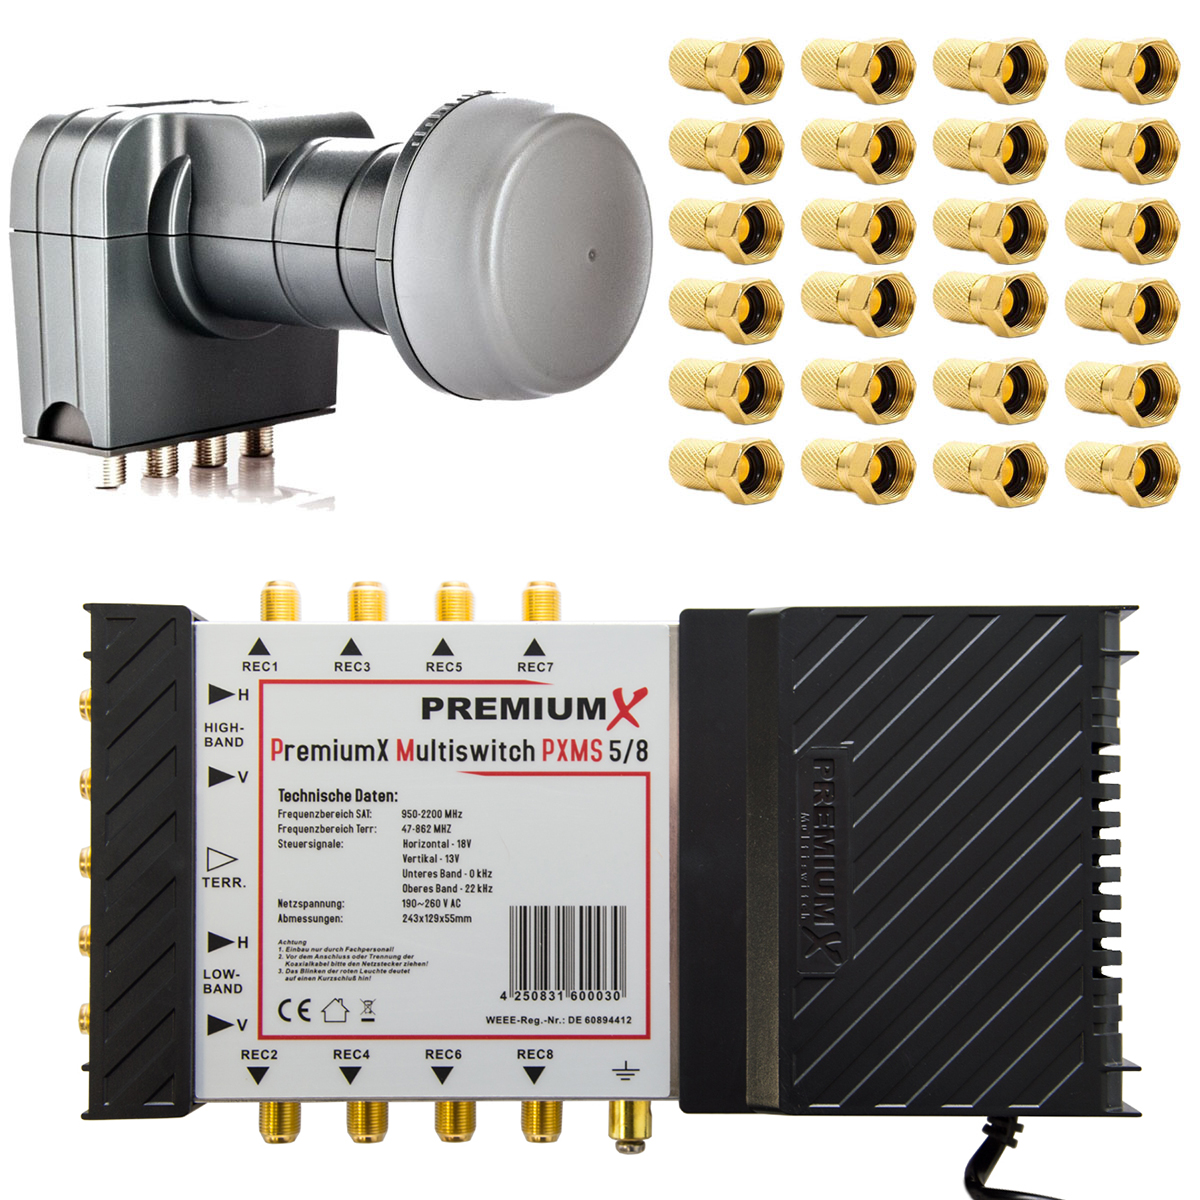 PREMIUMX Multischalter Quattro Sat-Multischalter 5/8 Switch Netzteil 407 PXMS mit LNB